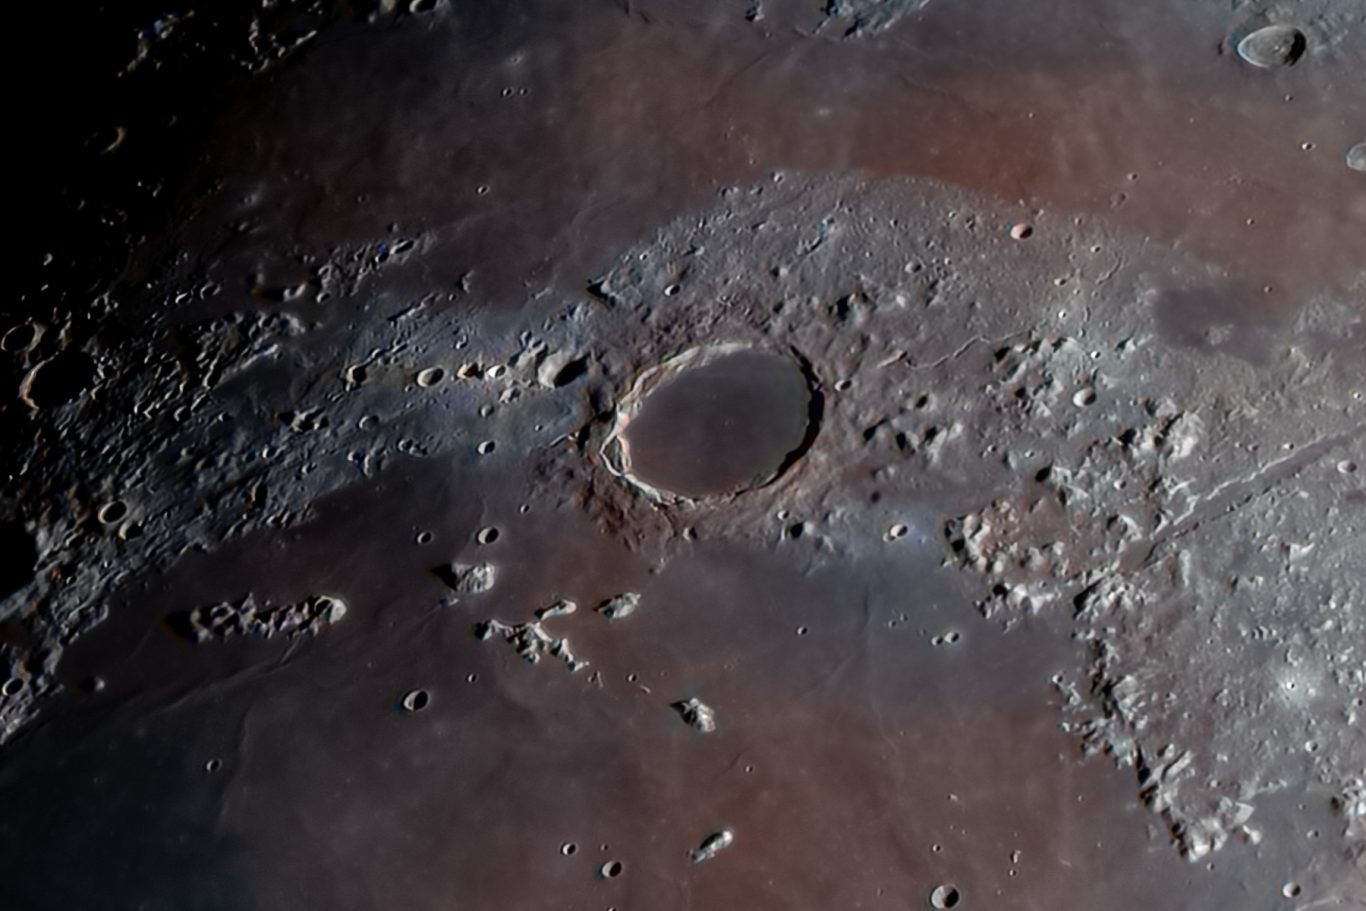 Cráter Platón y montañas lunares. Región lunar de Mare Imbrium, en el centro se observa el cráter Platón, de unos 100 km de diámetro. Foto: Franco Meconi.